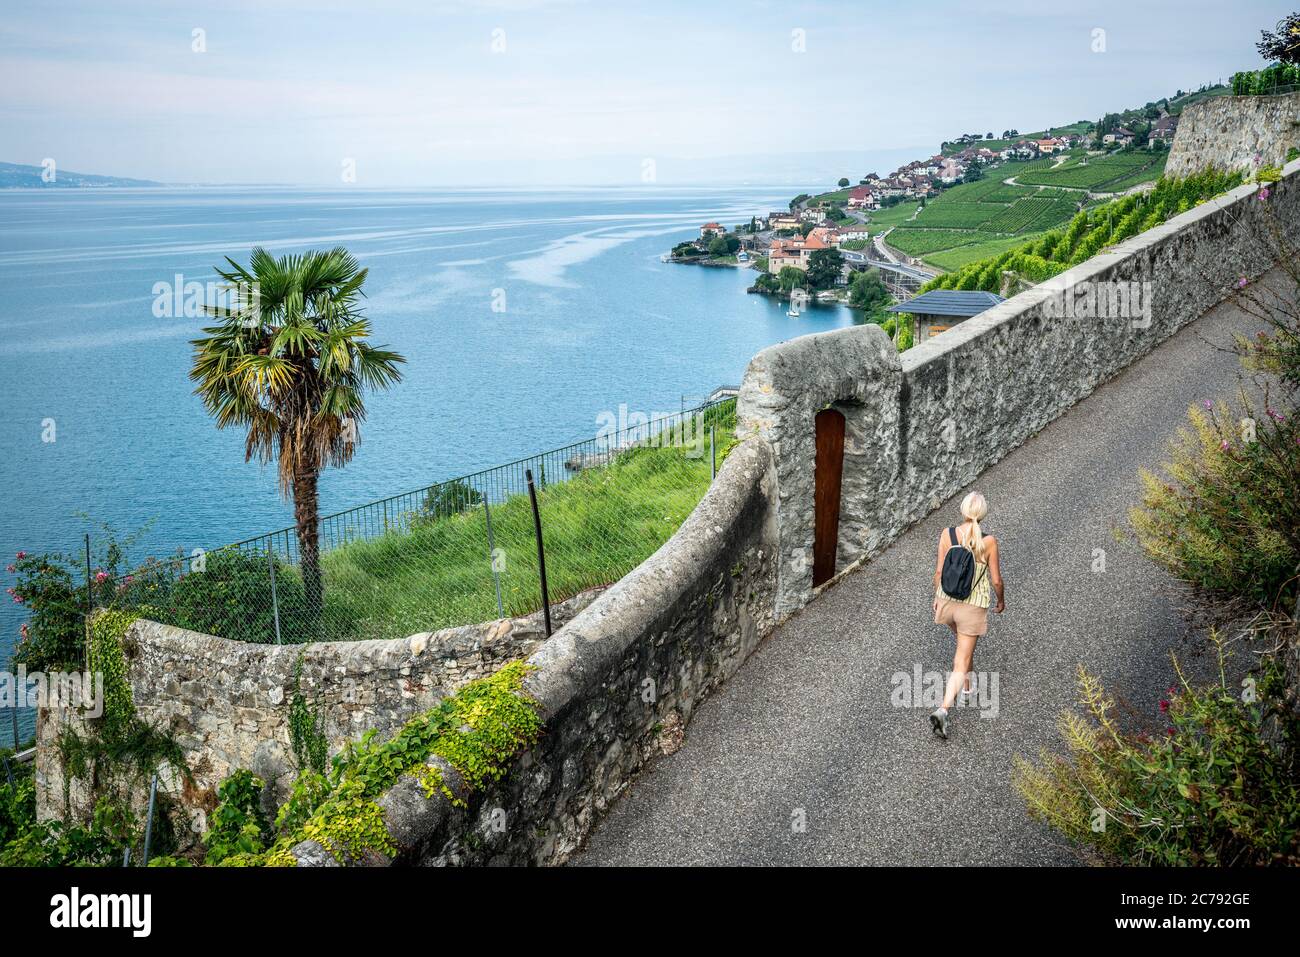 Randonnée touristique sur un sentier de randonnée au milieu des vignobles en terrasse de Lavaux et vue sur le lac de Genève à Lavaux Vaud Suisse Banque D'Images